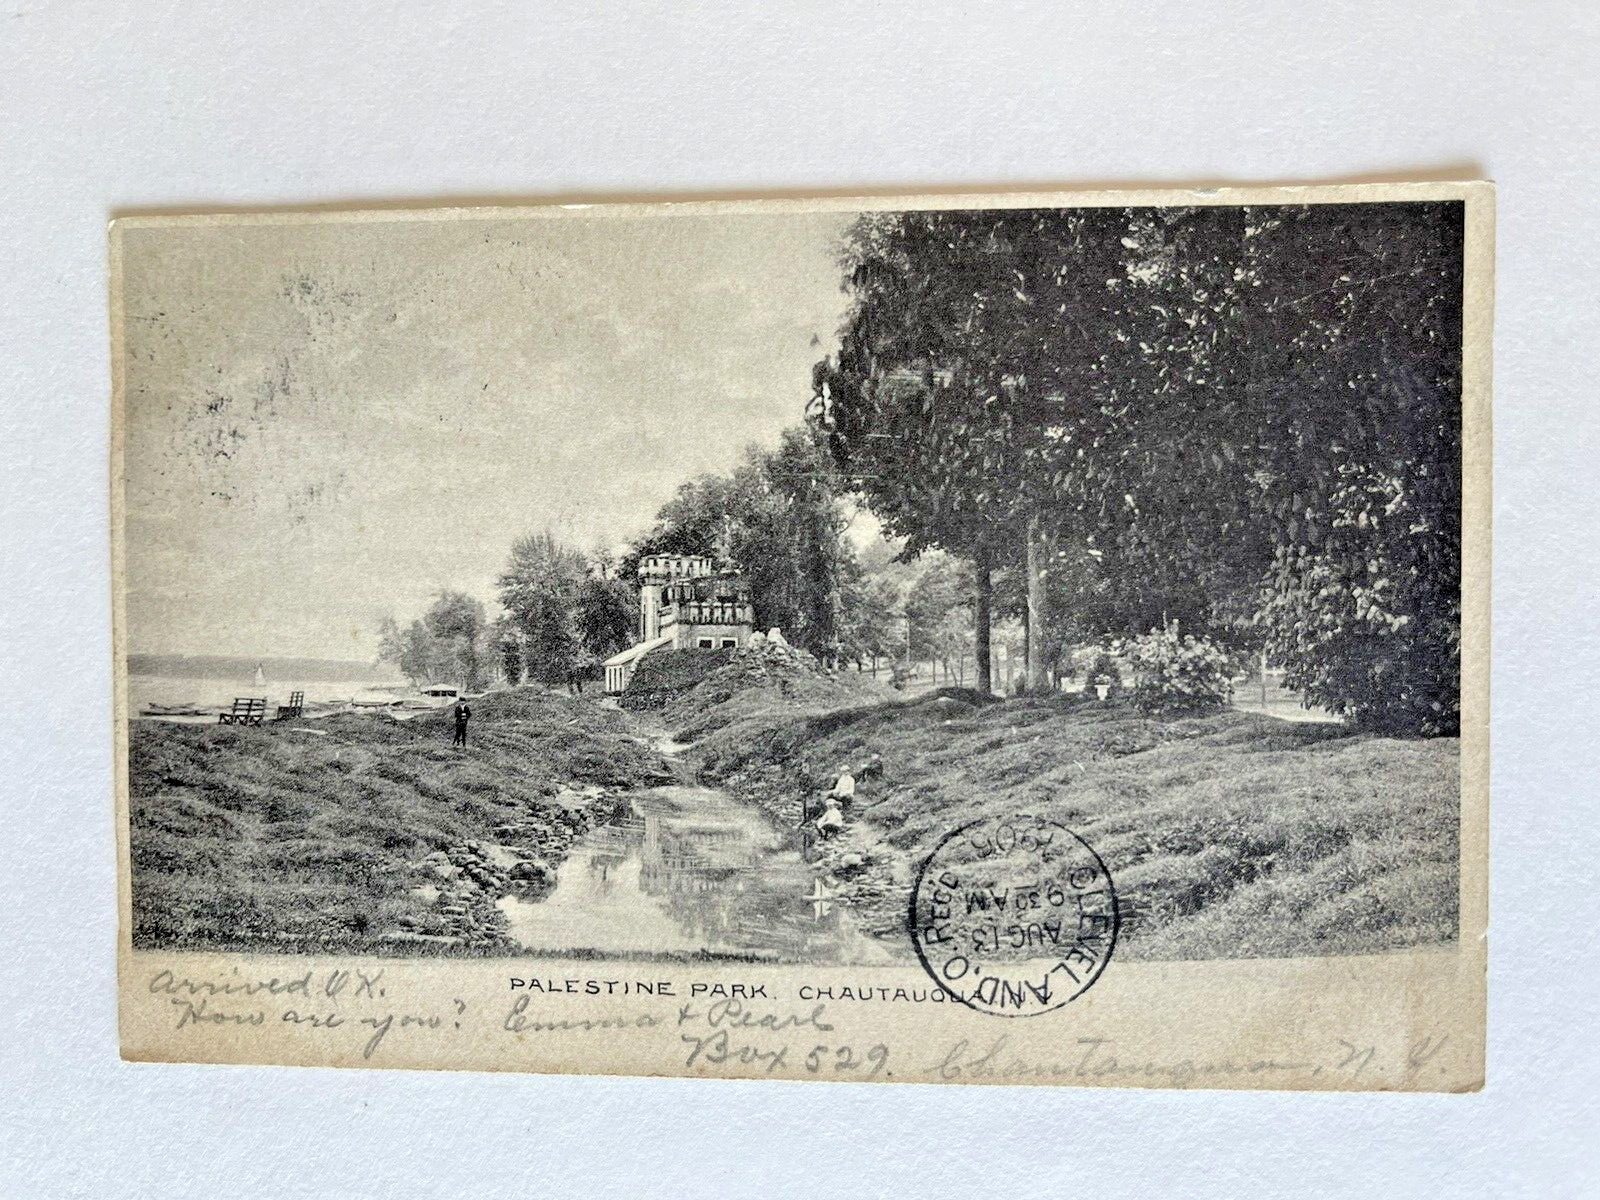 1906 Antique Vintage Postcard PALESTINE Park CHAUTAUQUA NY